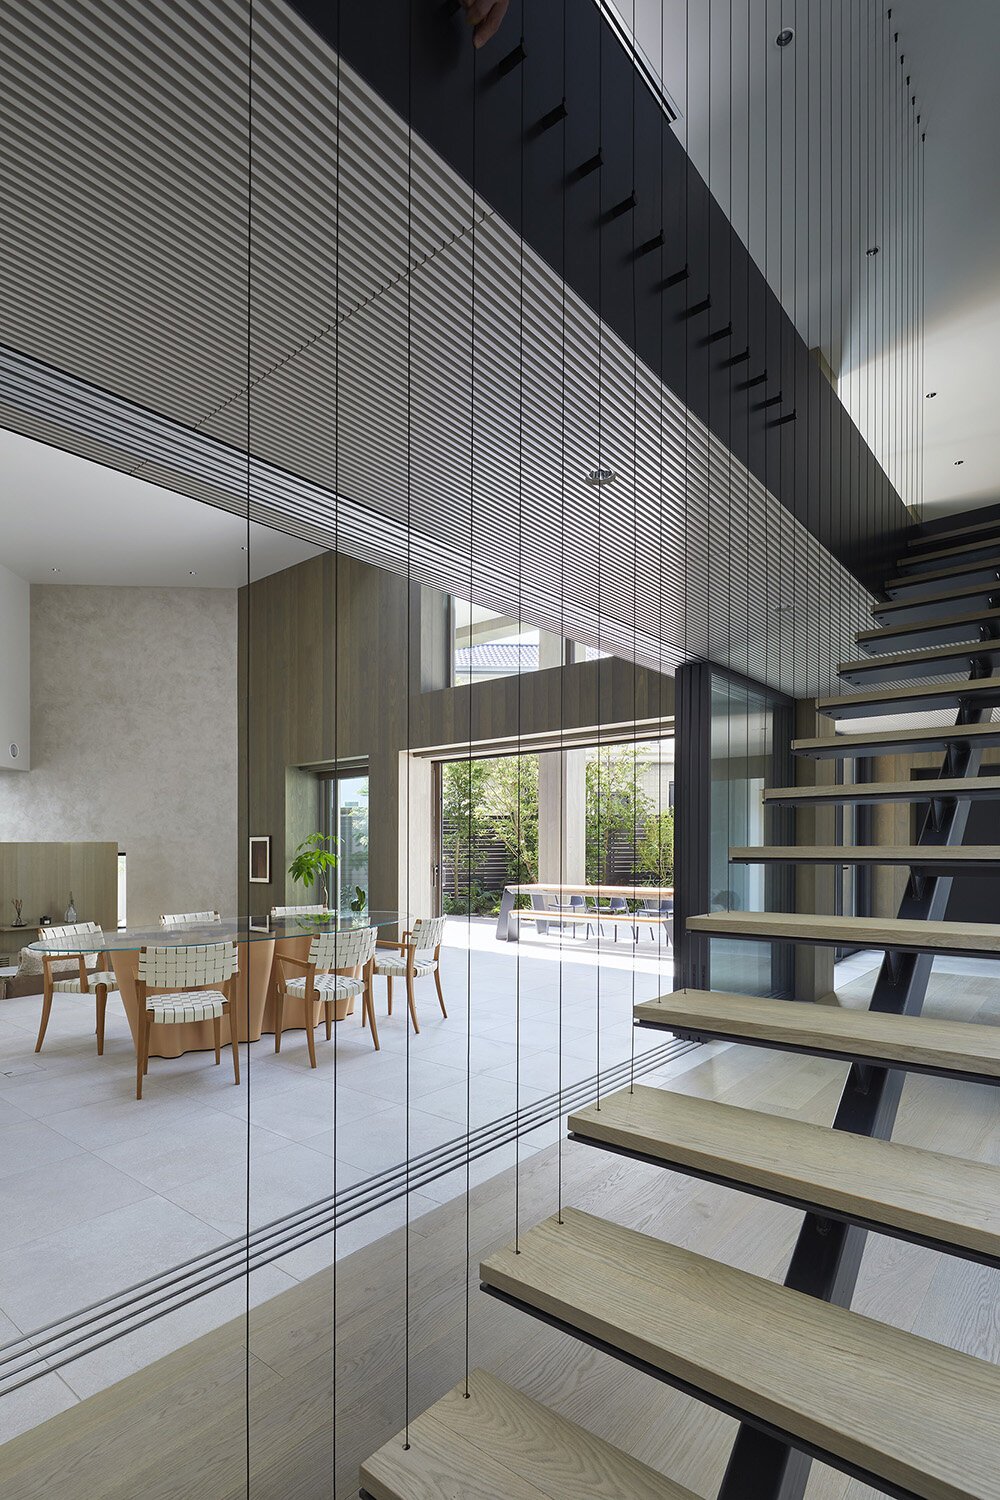  sinatoシナトの大野力が設計した住宅Shoto S。階段まわりのデザイン 